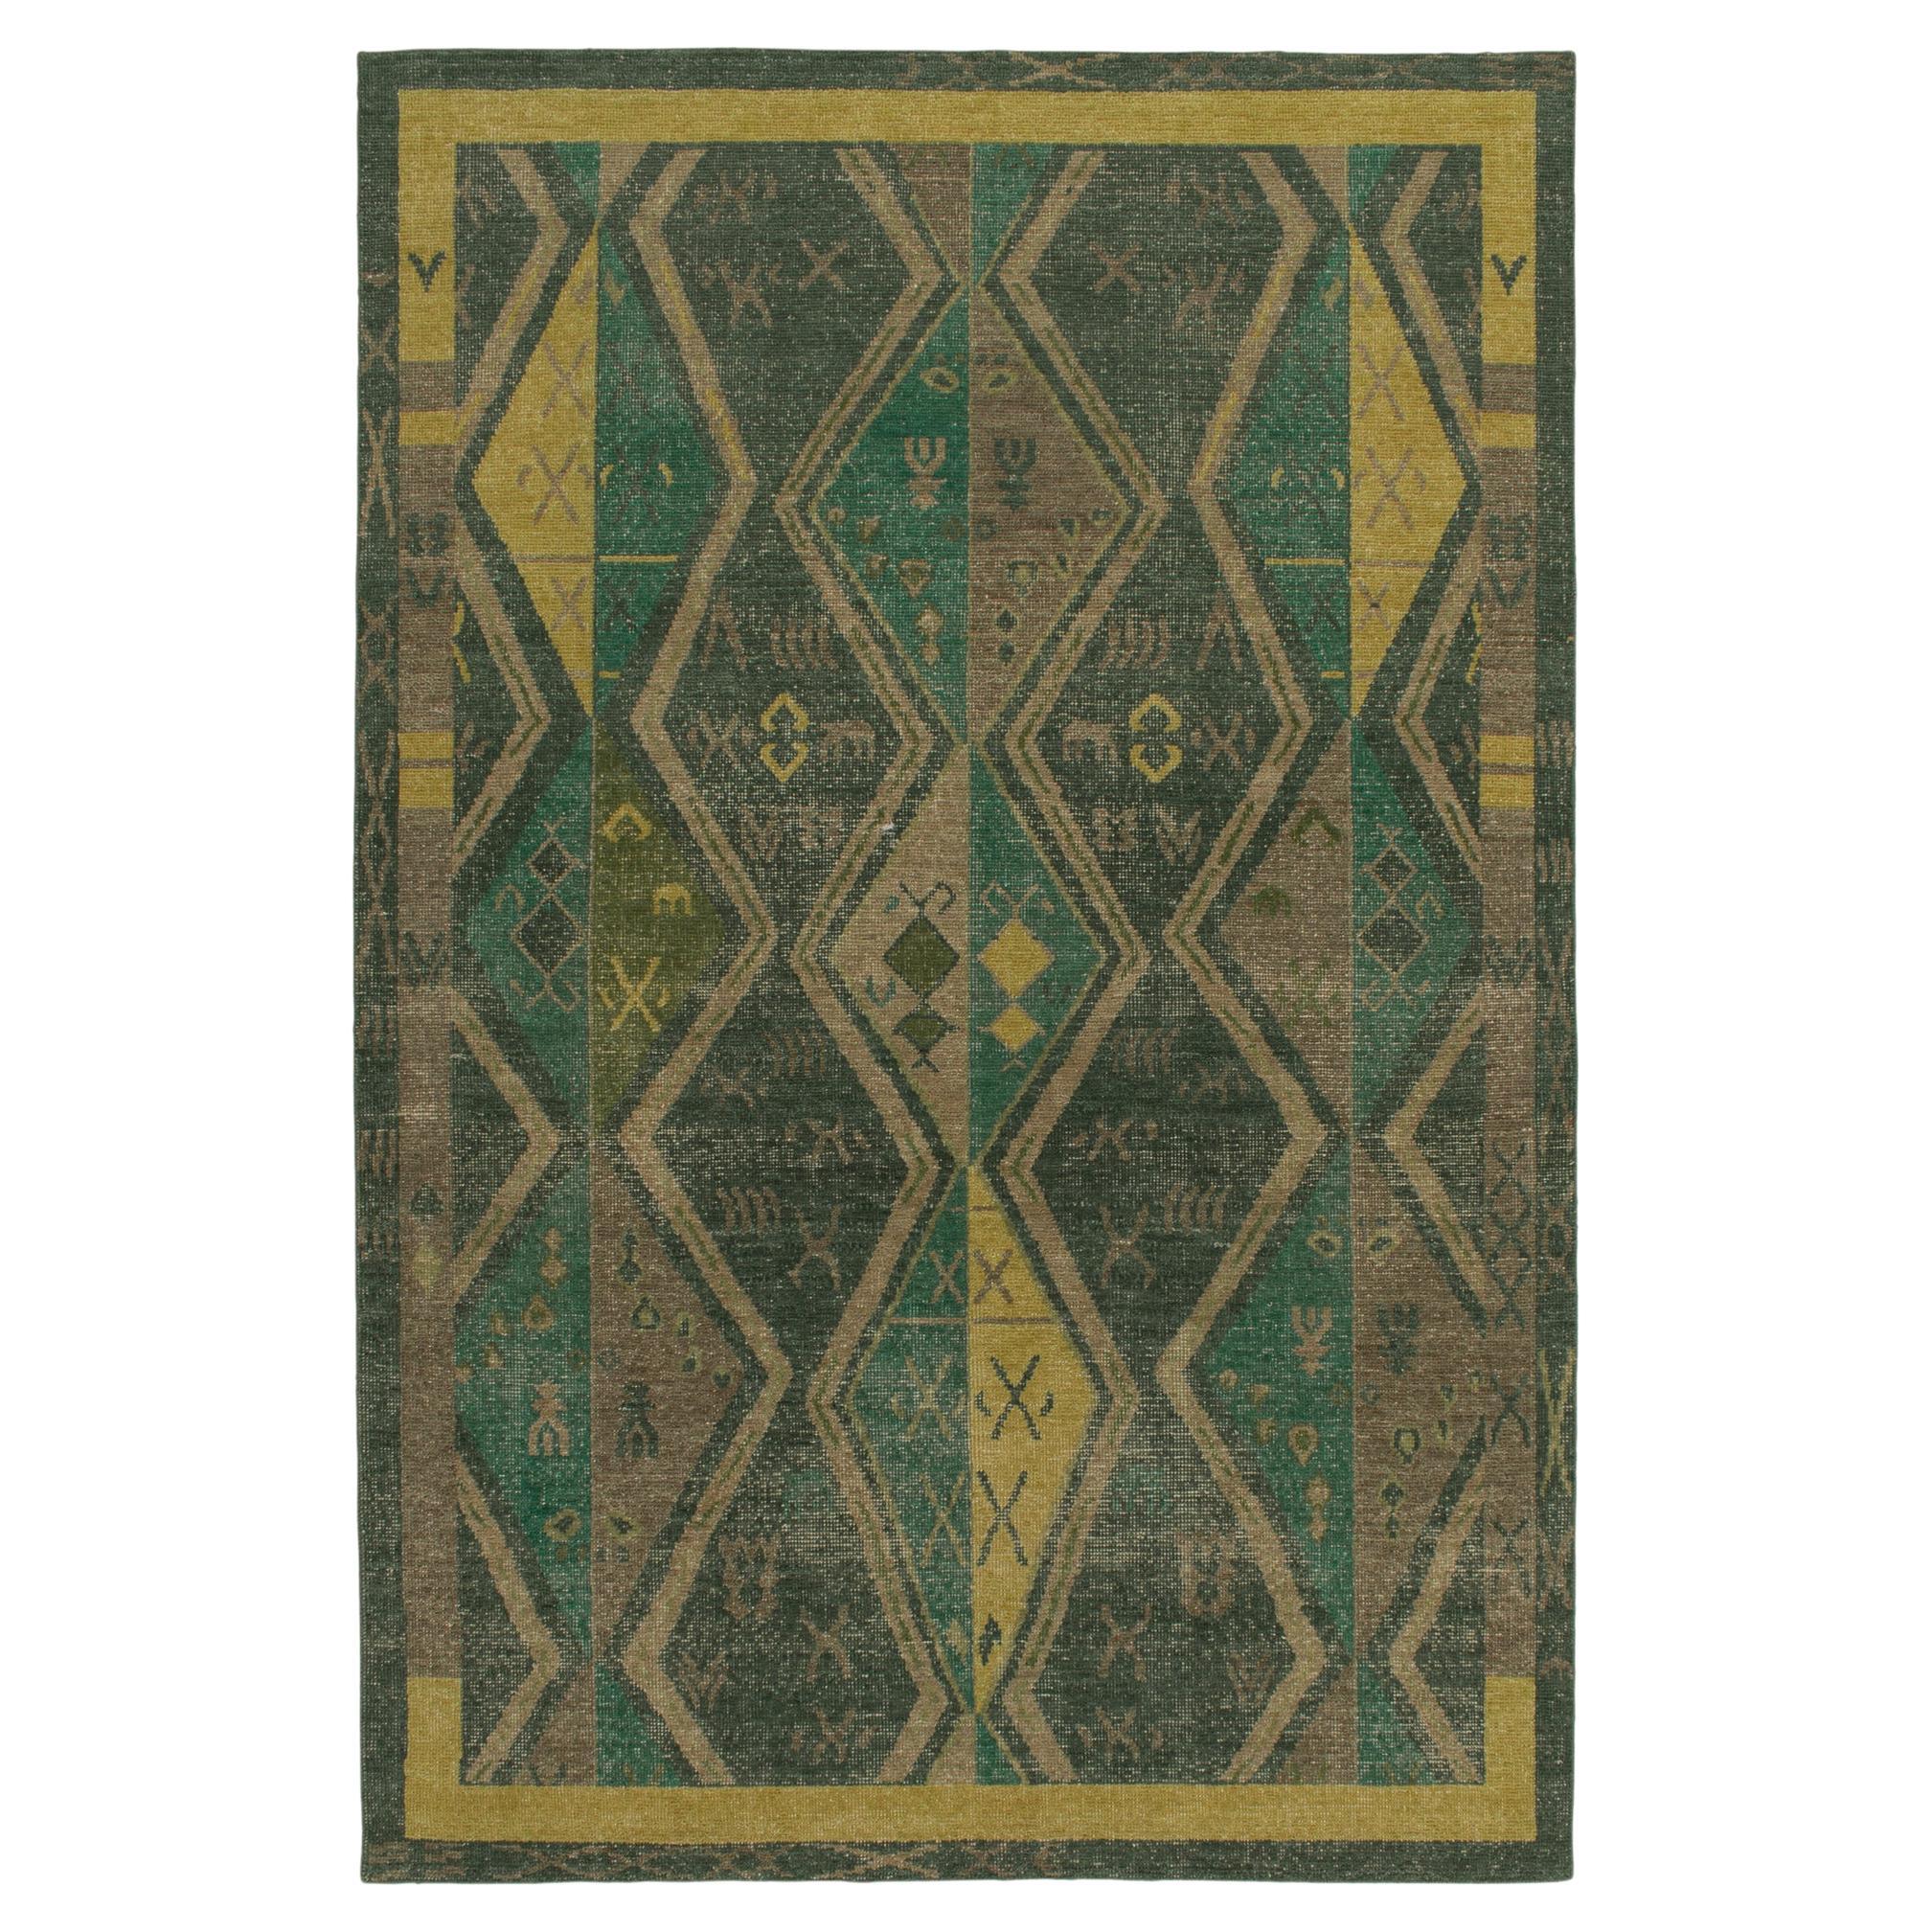 Teppich & Kilims im Distressed-Stil in Grün & Braun mit geometrischen Mustern